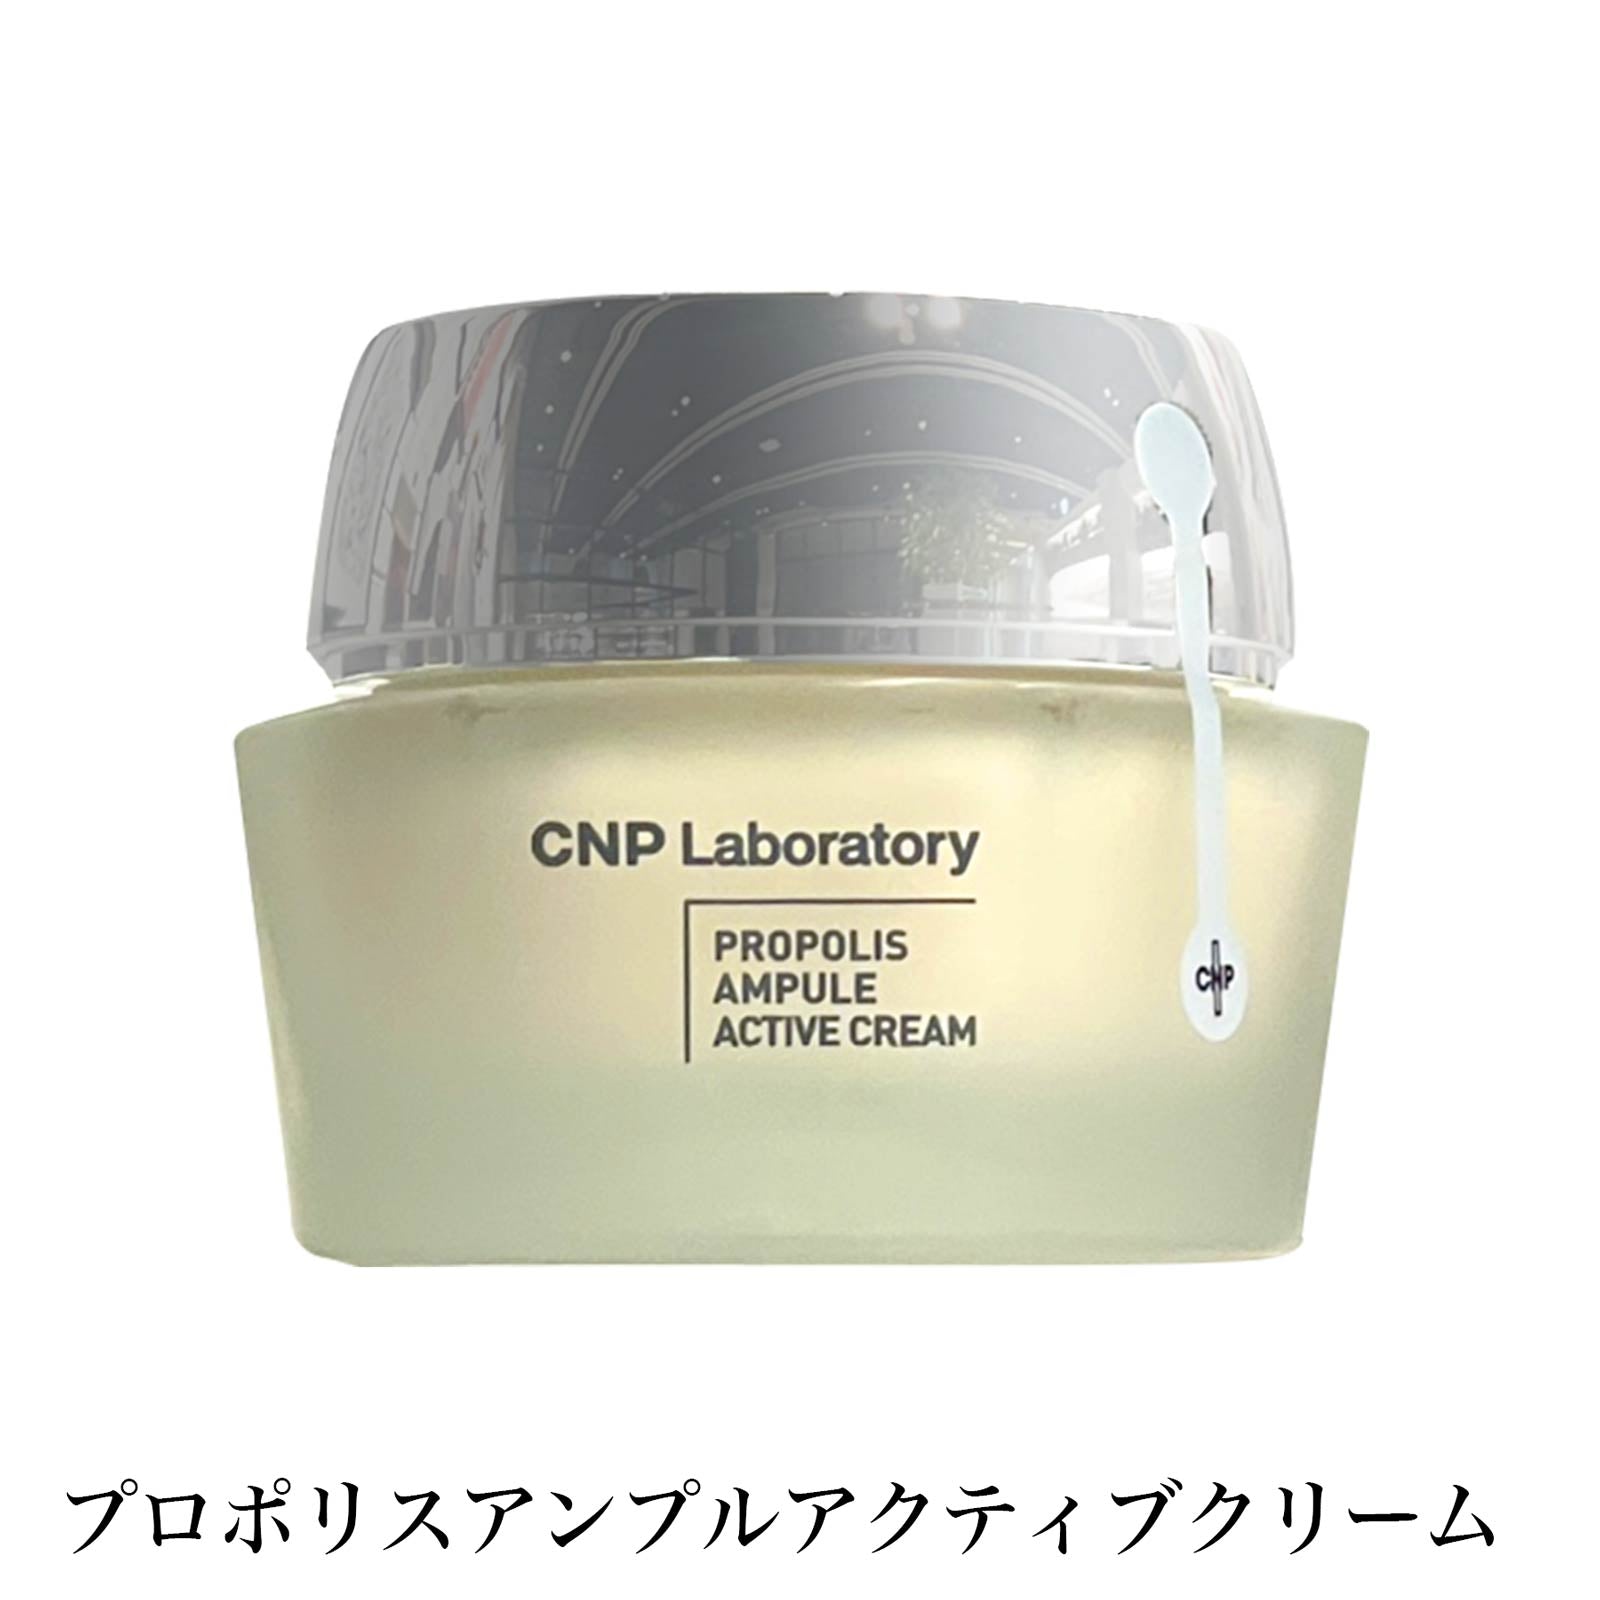 【フェイスクリーム】CNP Propolis Ampule Active Cream